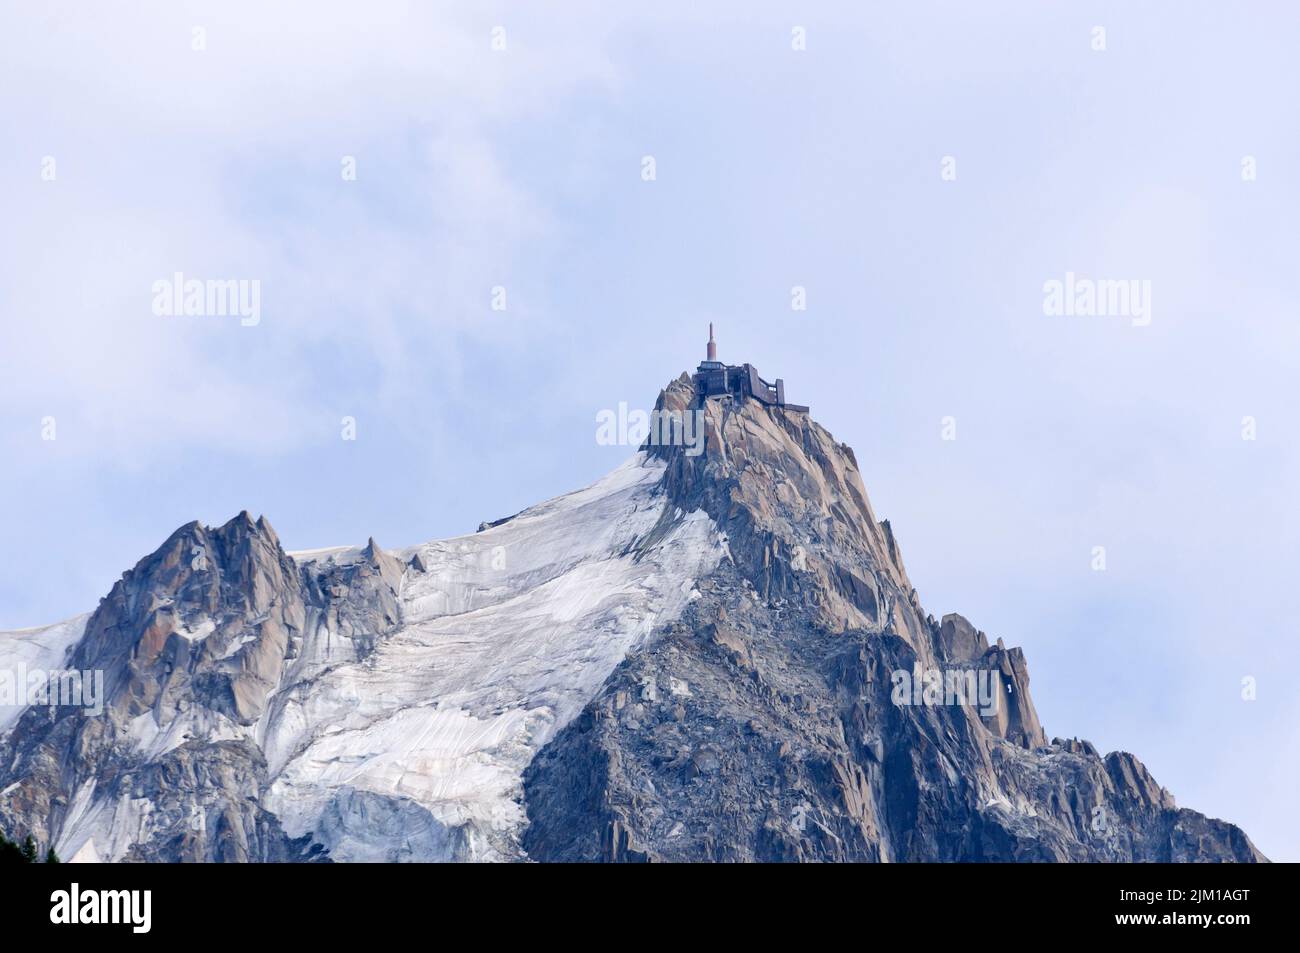 Aiguille de Midi, Chamonix Mont-Blanc, France Stock Photo